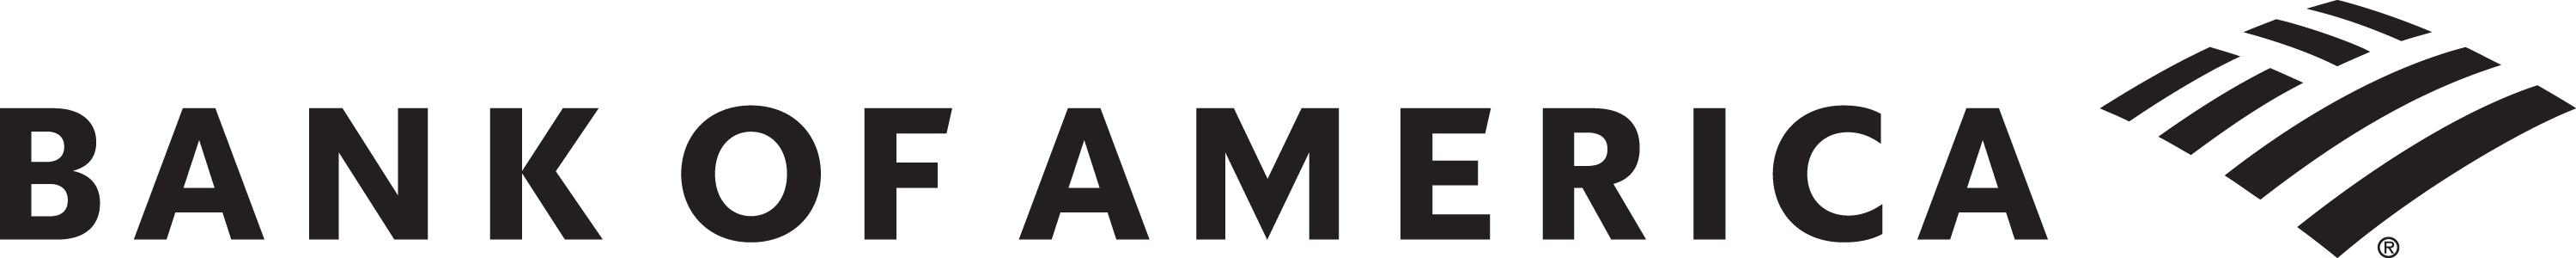 A single black logo